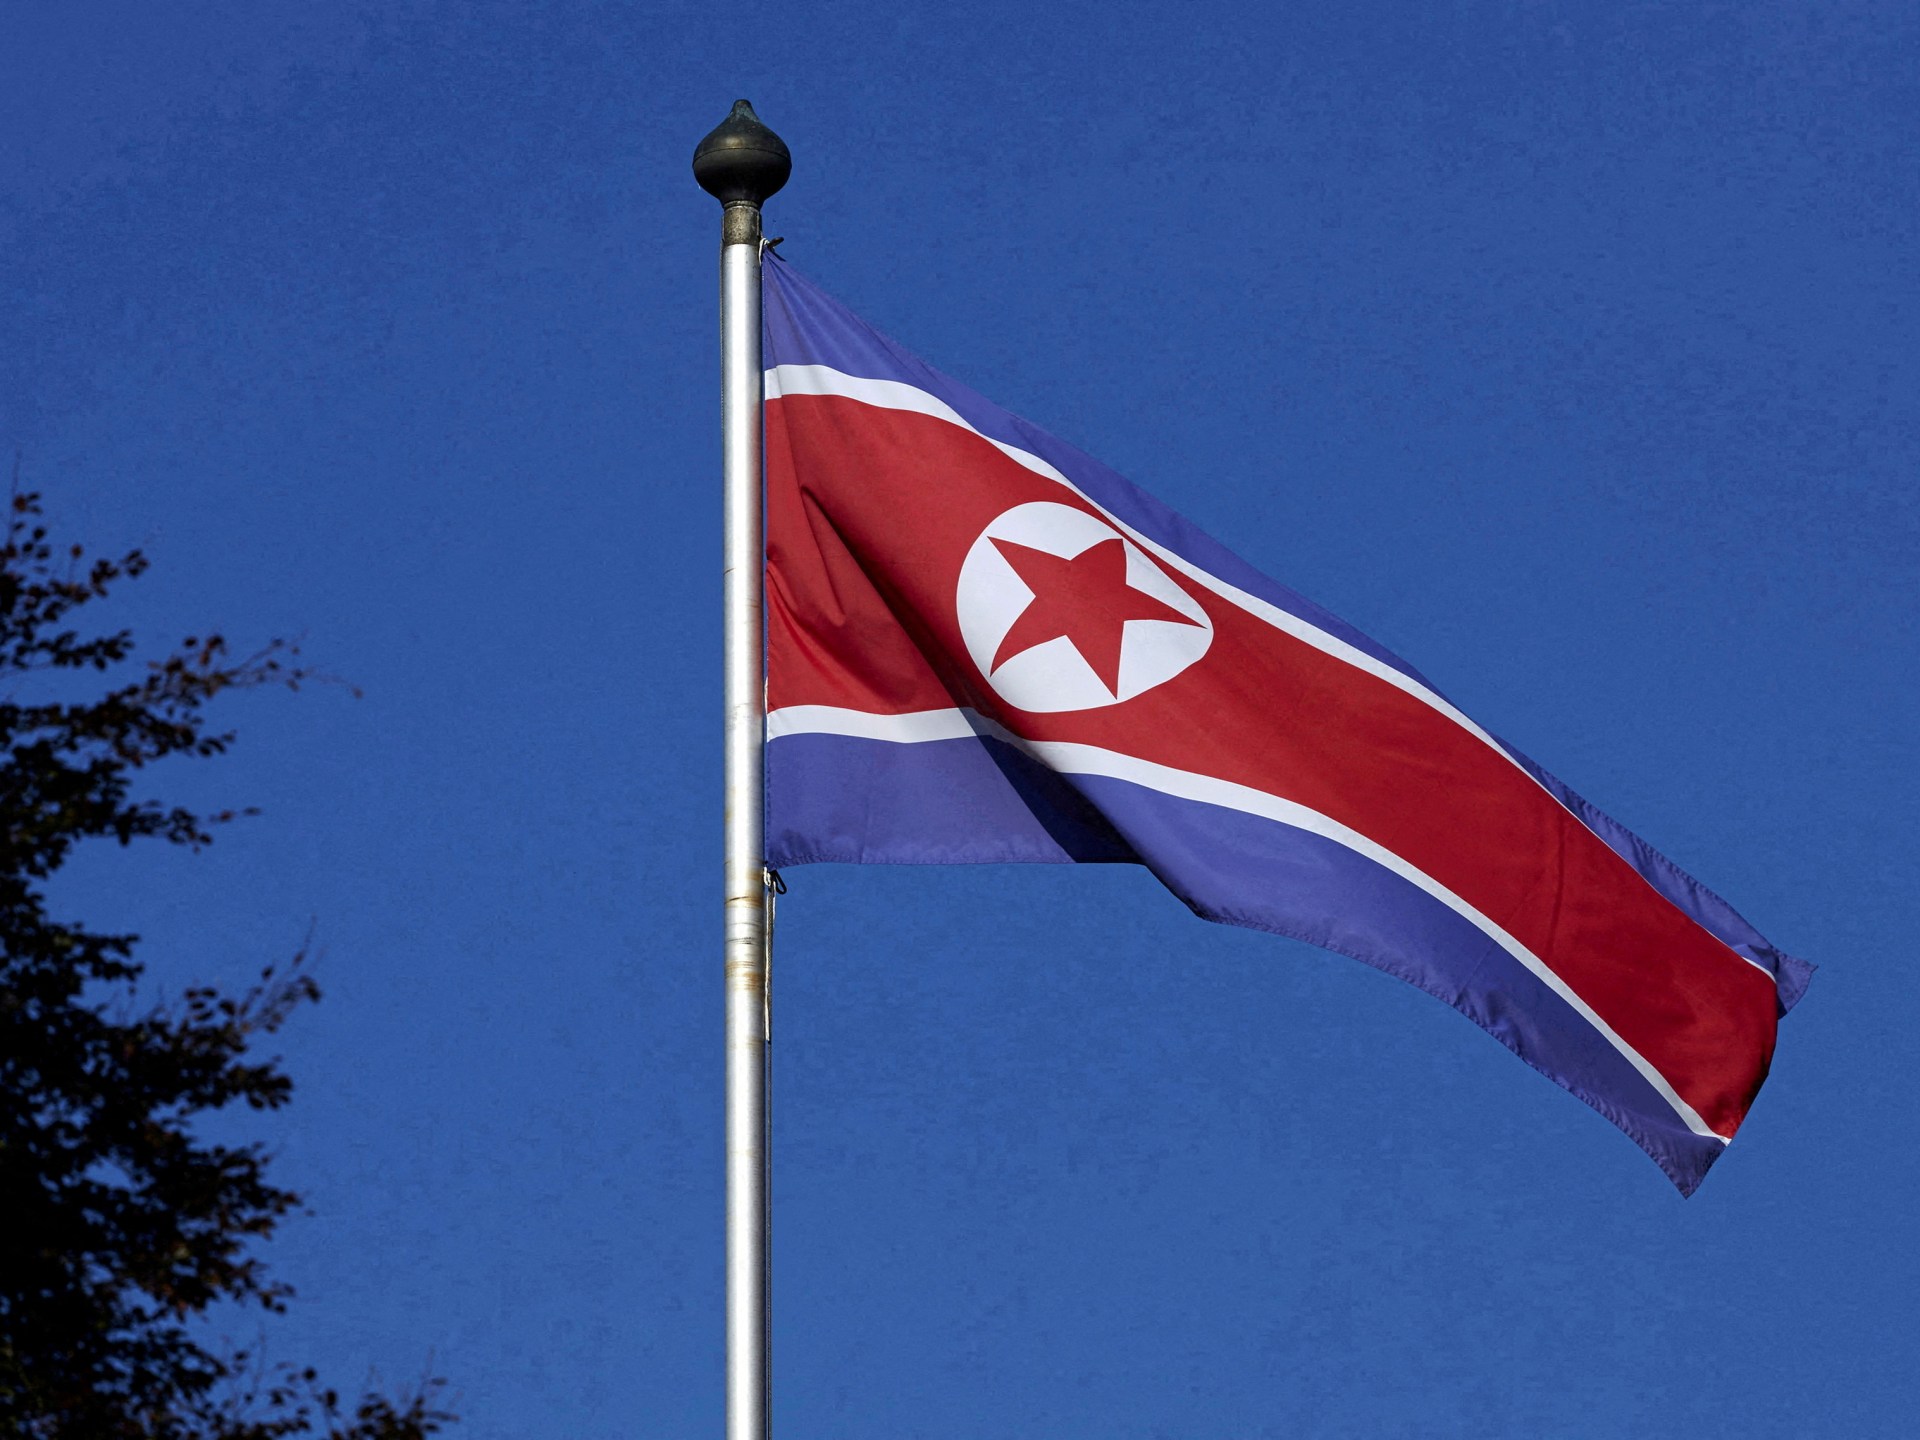 Korea Utara mengeksekusi orang karena membagikan media Korea Selatan: Laporan |  Berita Hak Asasi Manusia